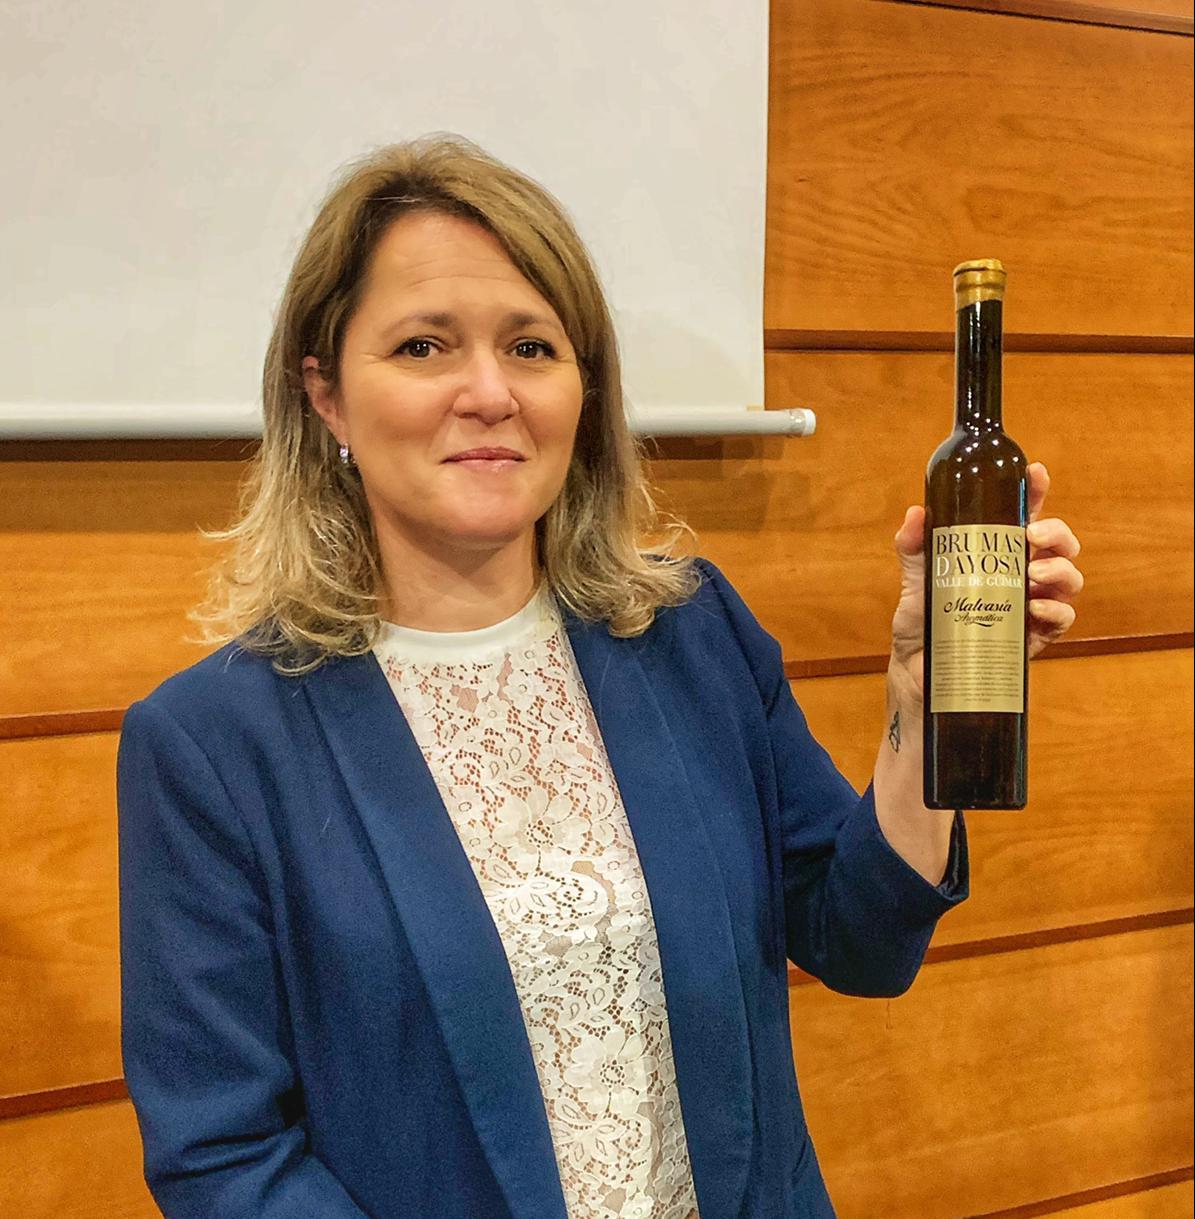 Brumas de Ayosa Malvasía aromática dulce, de Güímar (Tenerife), elegido el mejor vino del Archipiélago en el Concurso Agrocanarias 2020